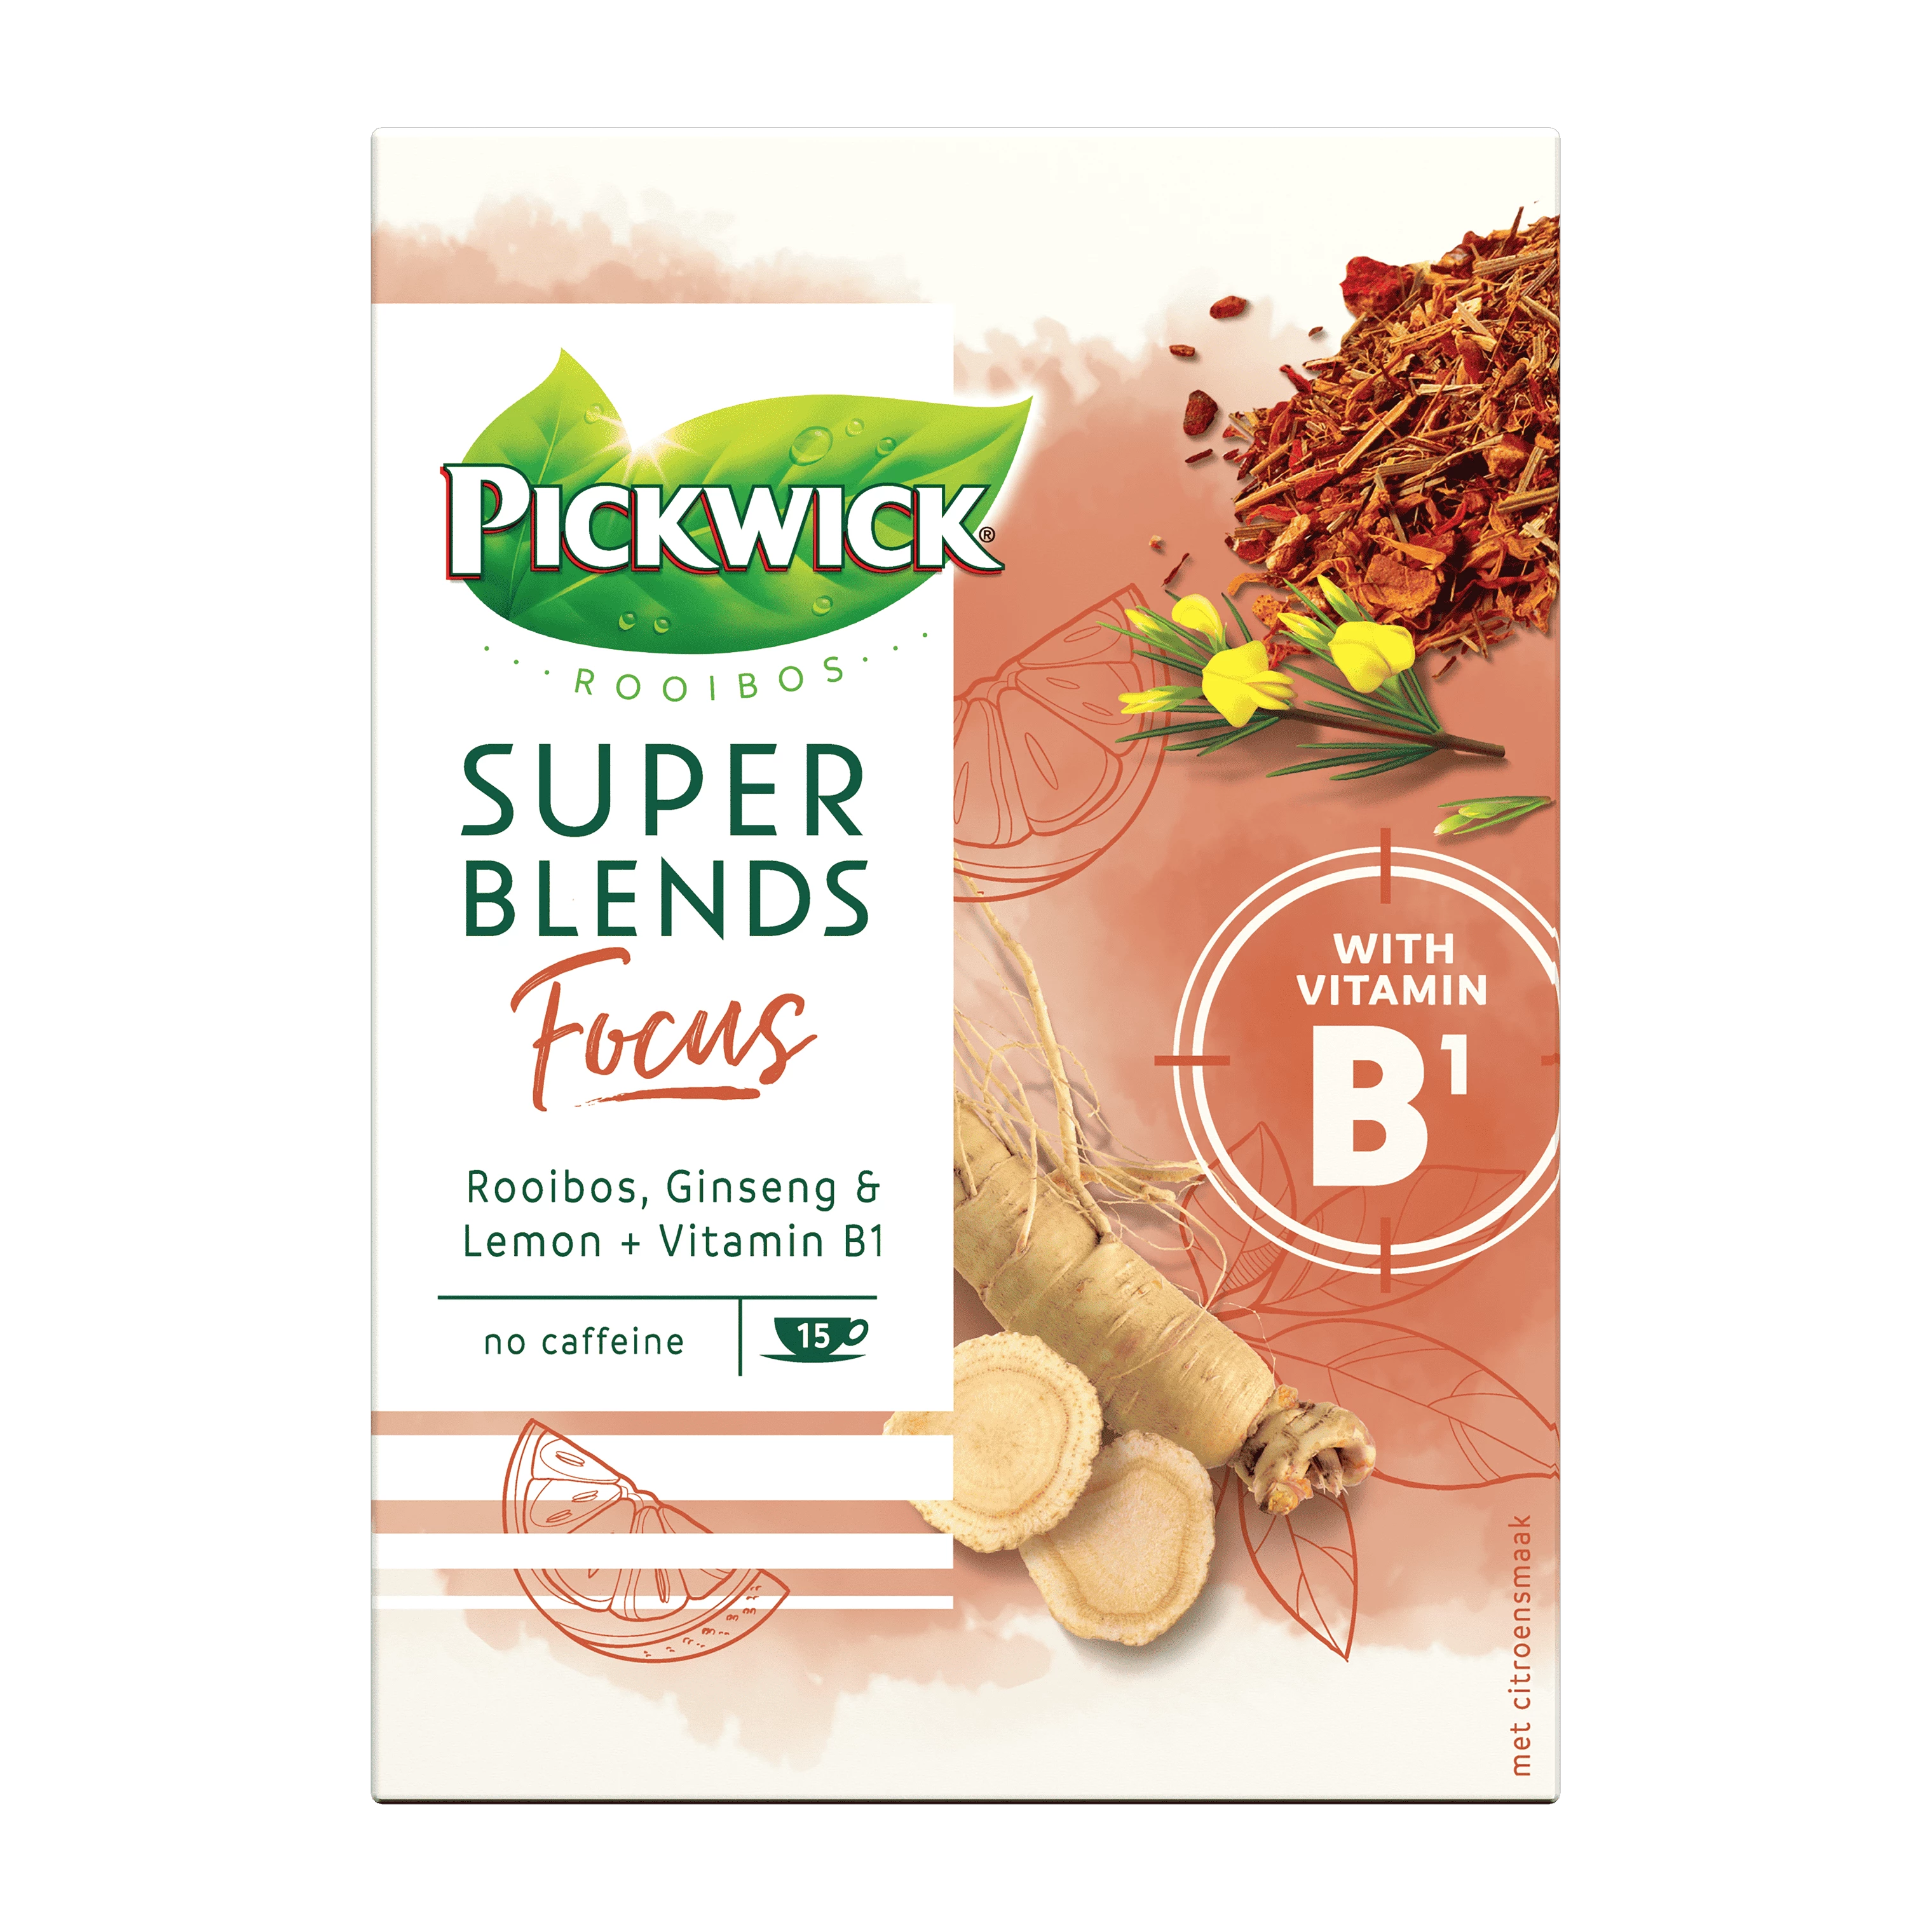 Verpakking van Herbal Super Blends Focus.